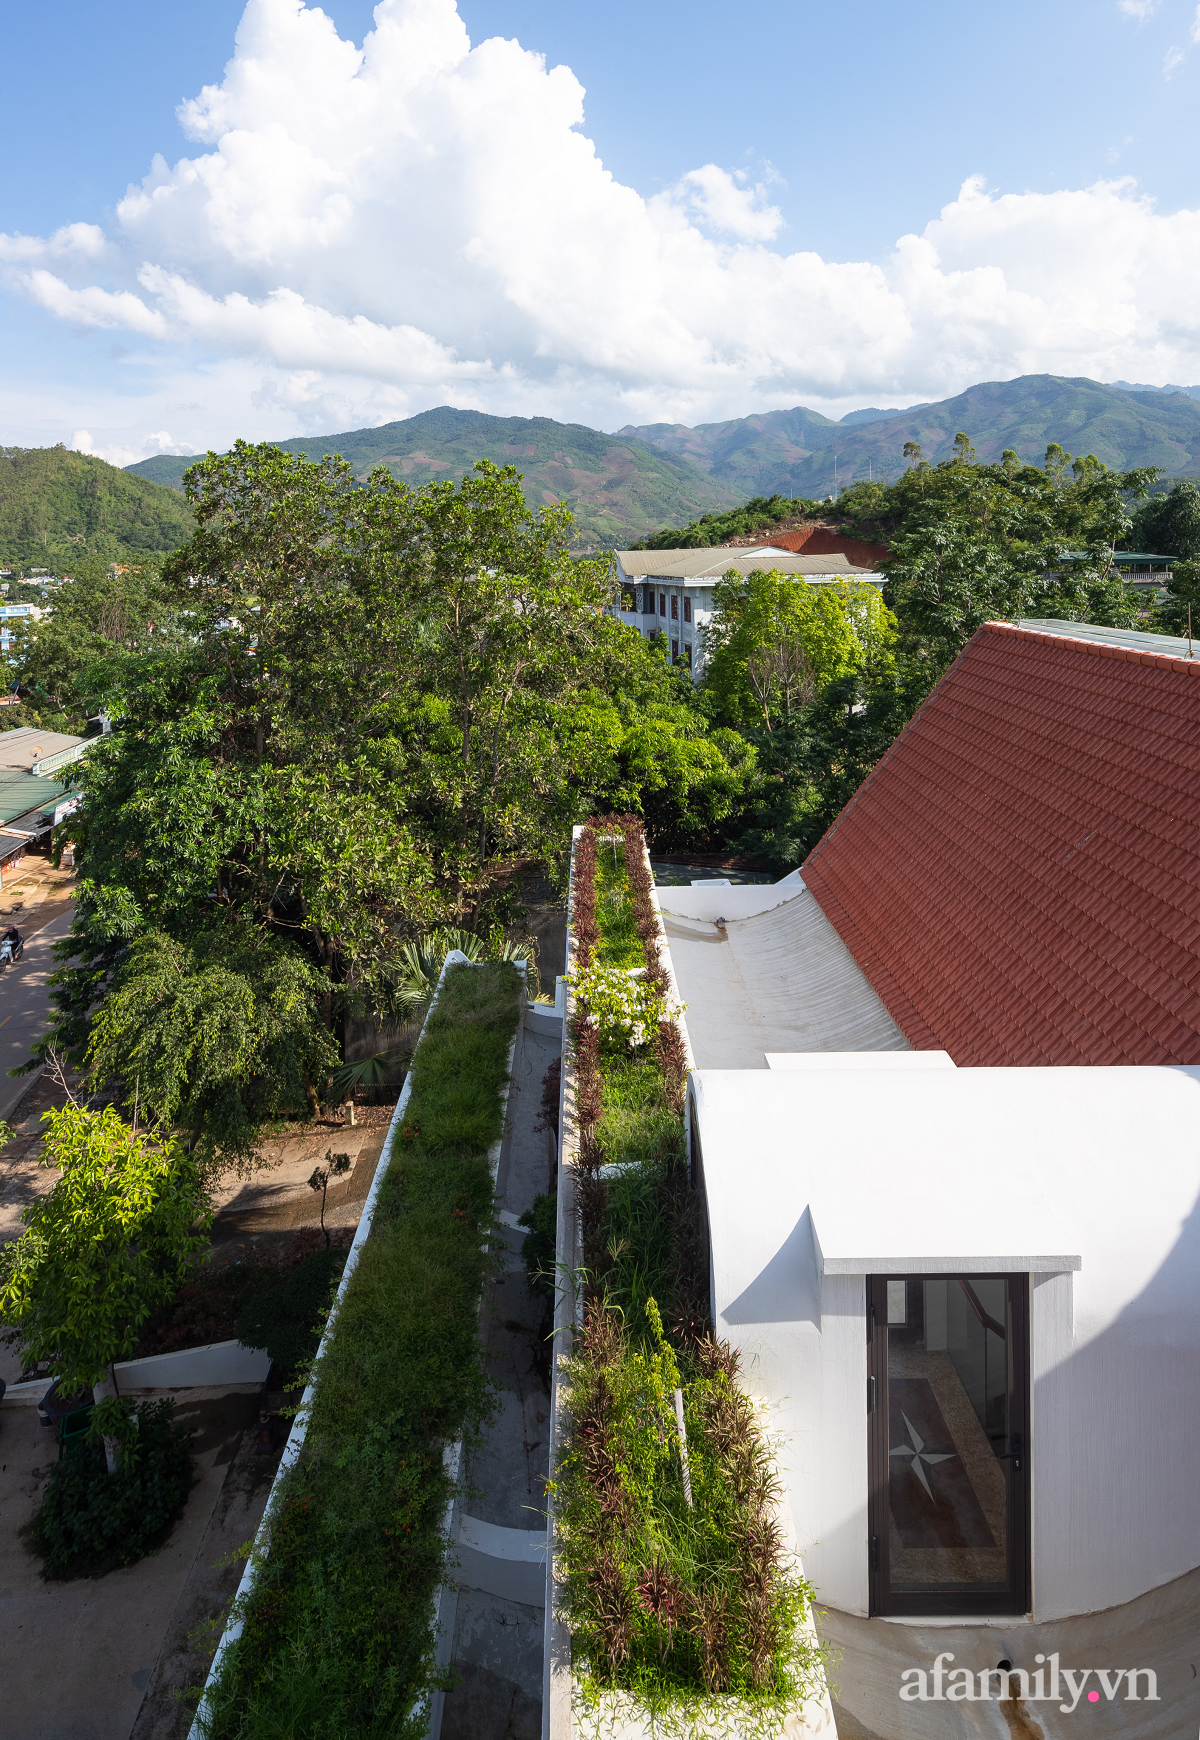 Ngôi nhà quanh năm mát mẻ nhờ thiết kế mái cong lưu thông gió tự nhiên ở Sơn La - Ảnh 3.